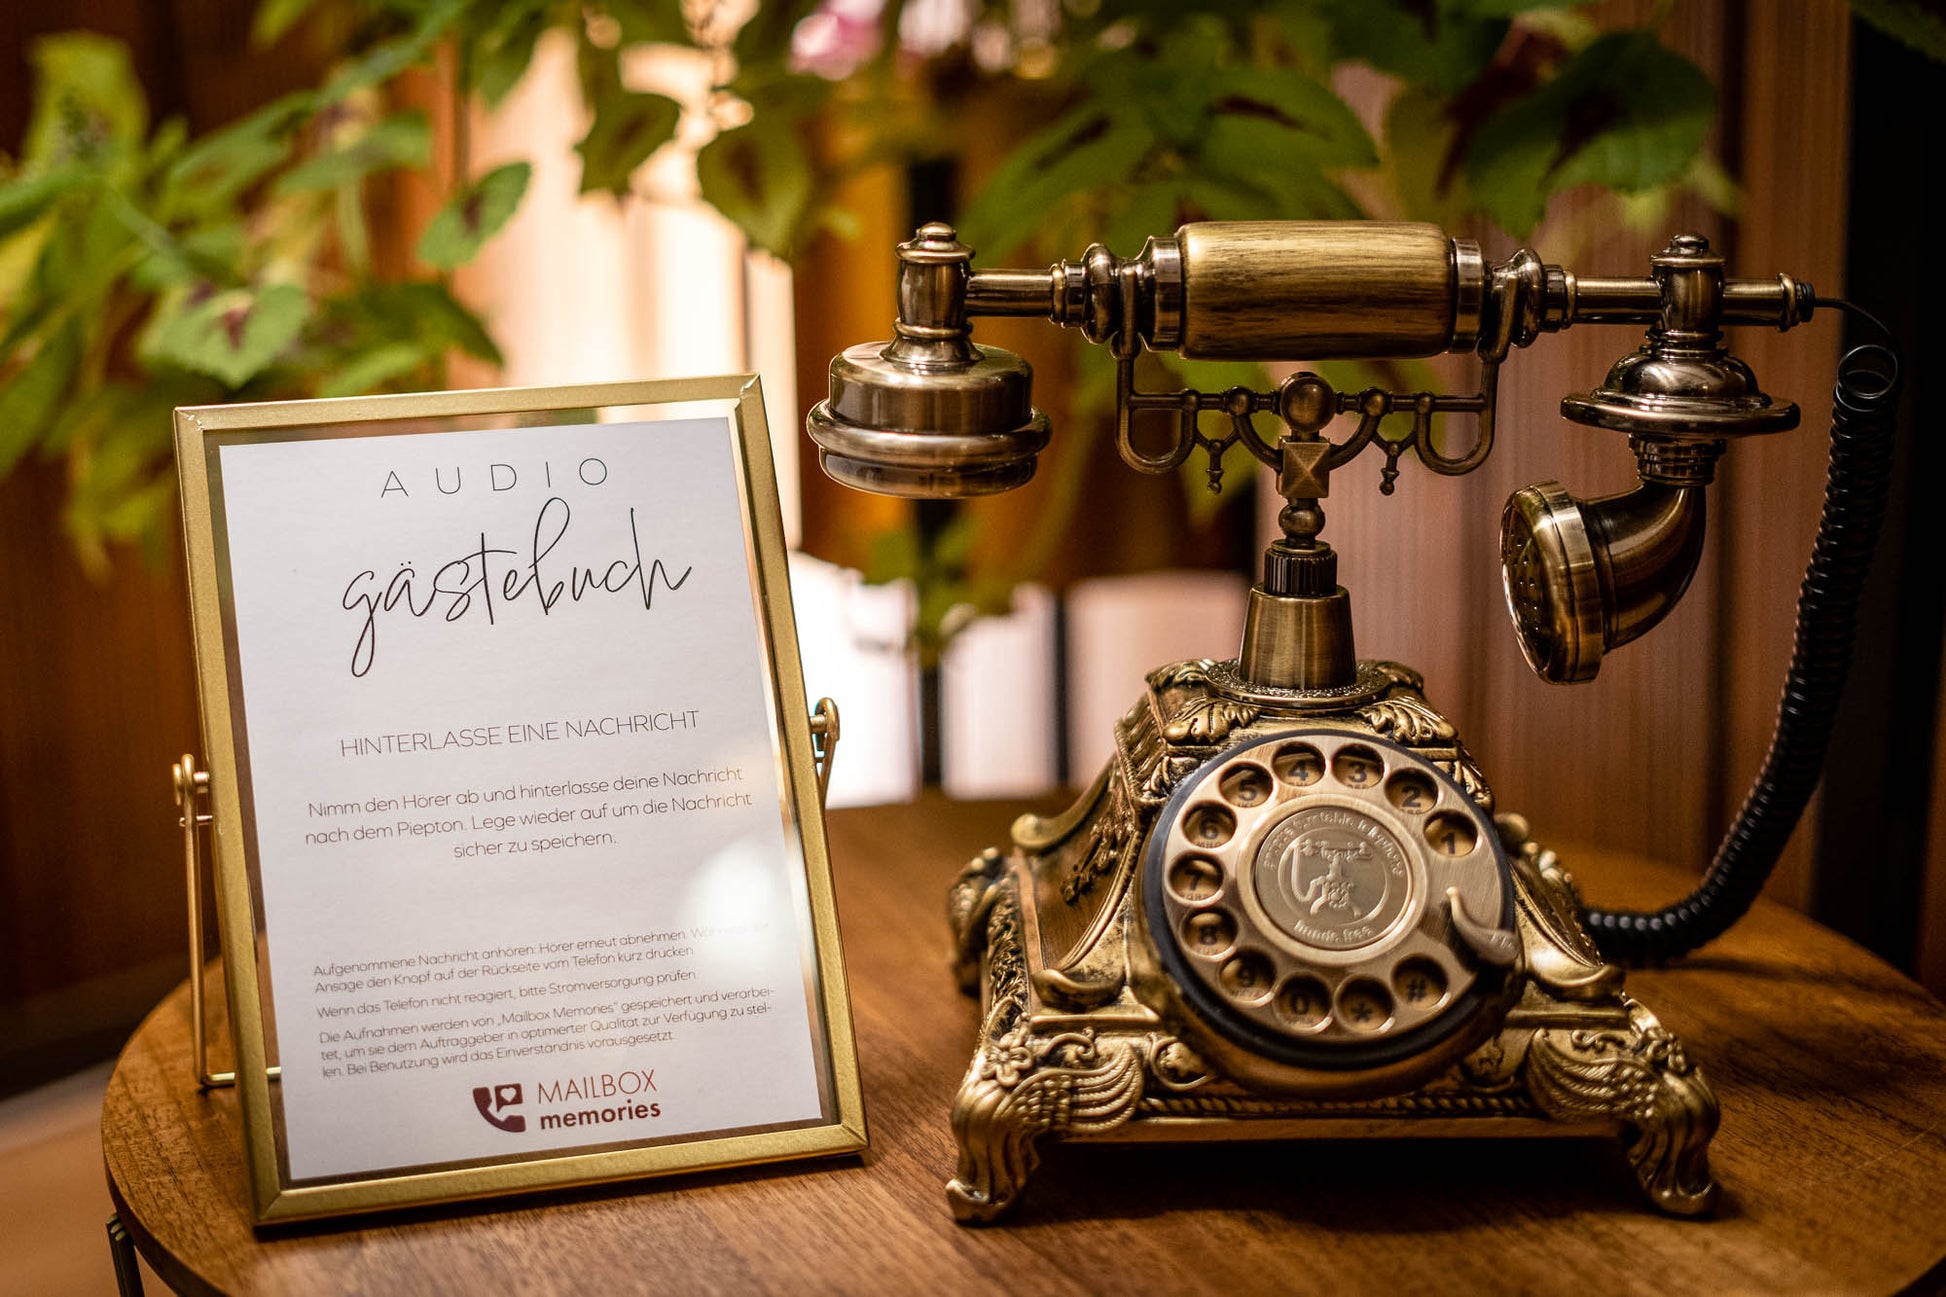 Audio-Gästebuch Messing-Telefon "The Vintage" mit goldenem Aufsteller